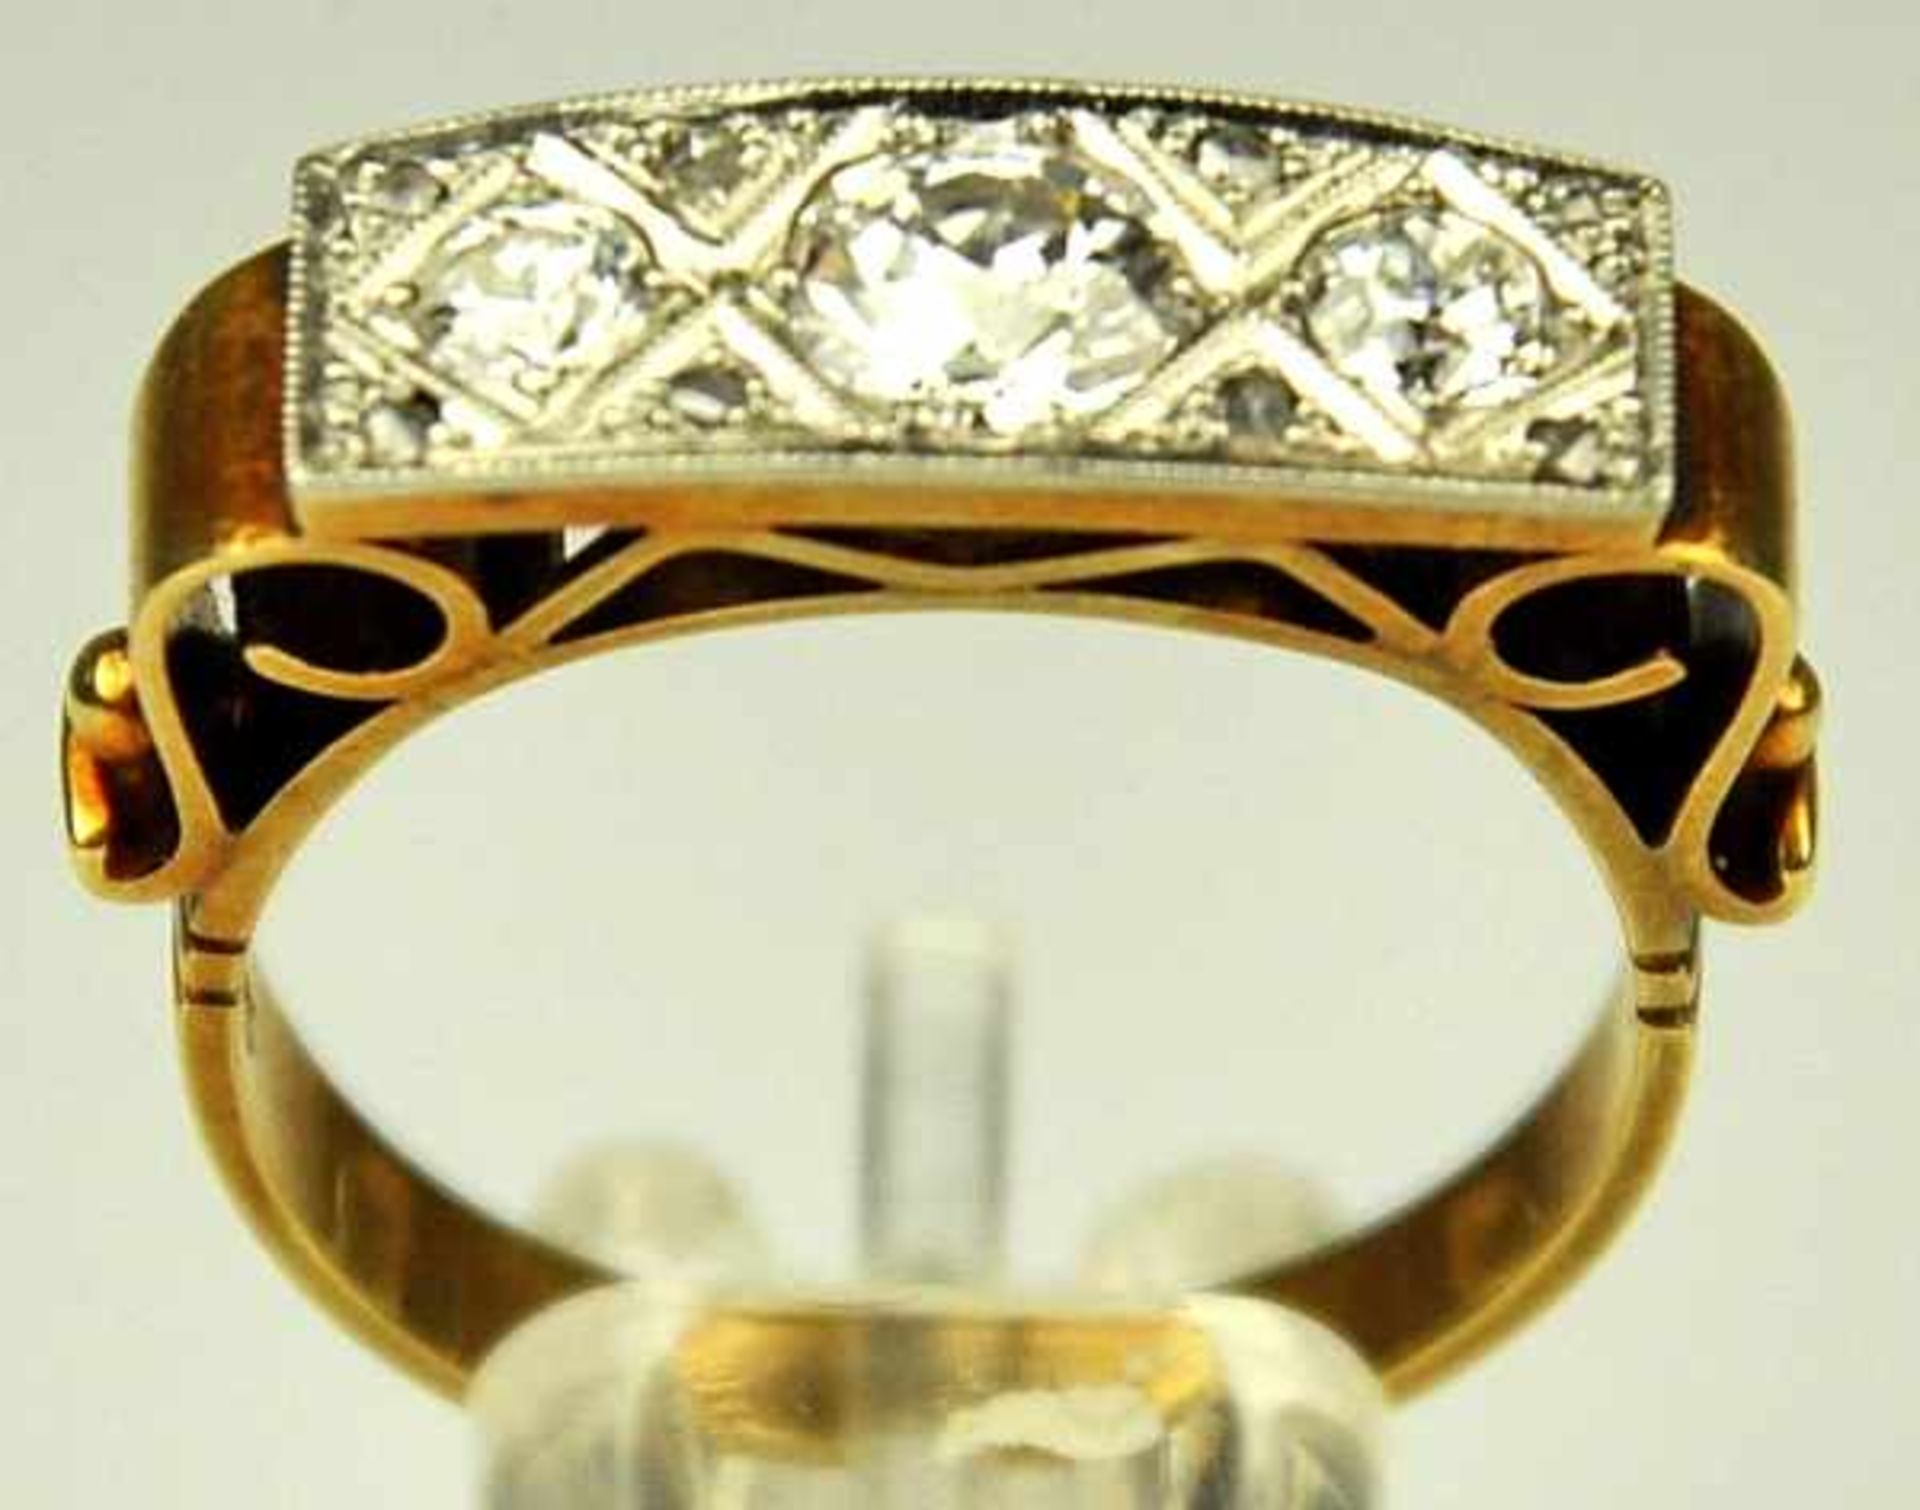 DIAMANT-RING rechteckige Schauseite besetzt mit 3 grösseren Altschliffdiamanten um 0,7-0,75ct, - Image 2 of 5